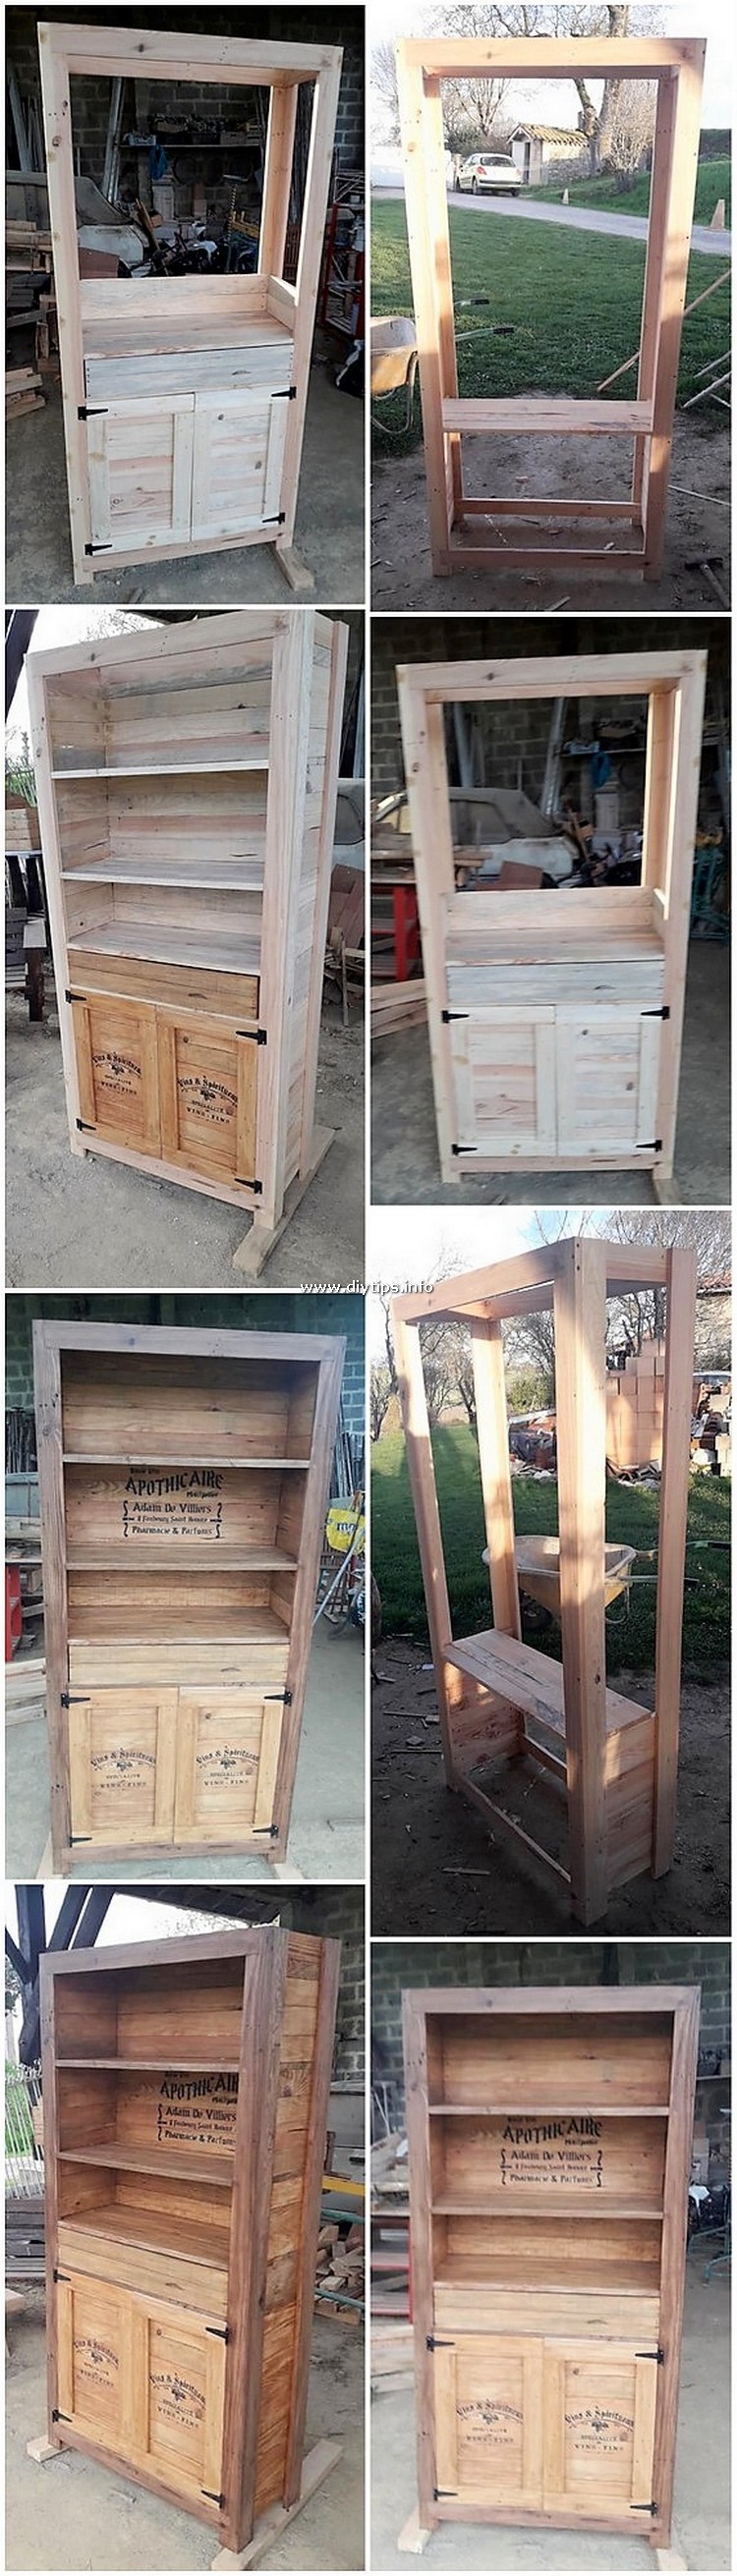 DIY Pallet Cabinet